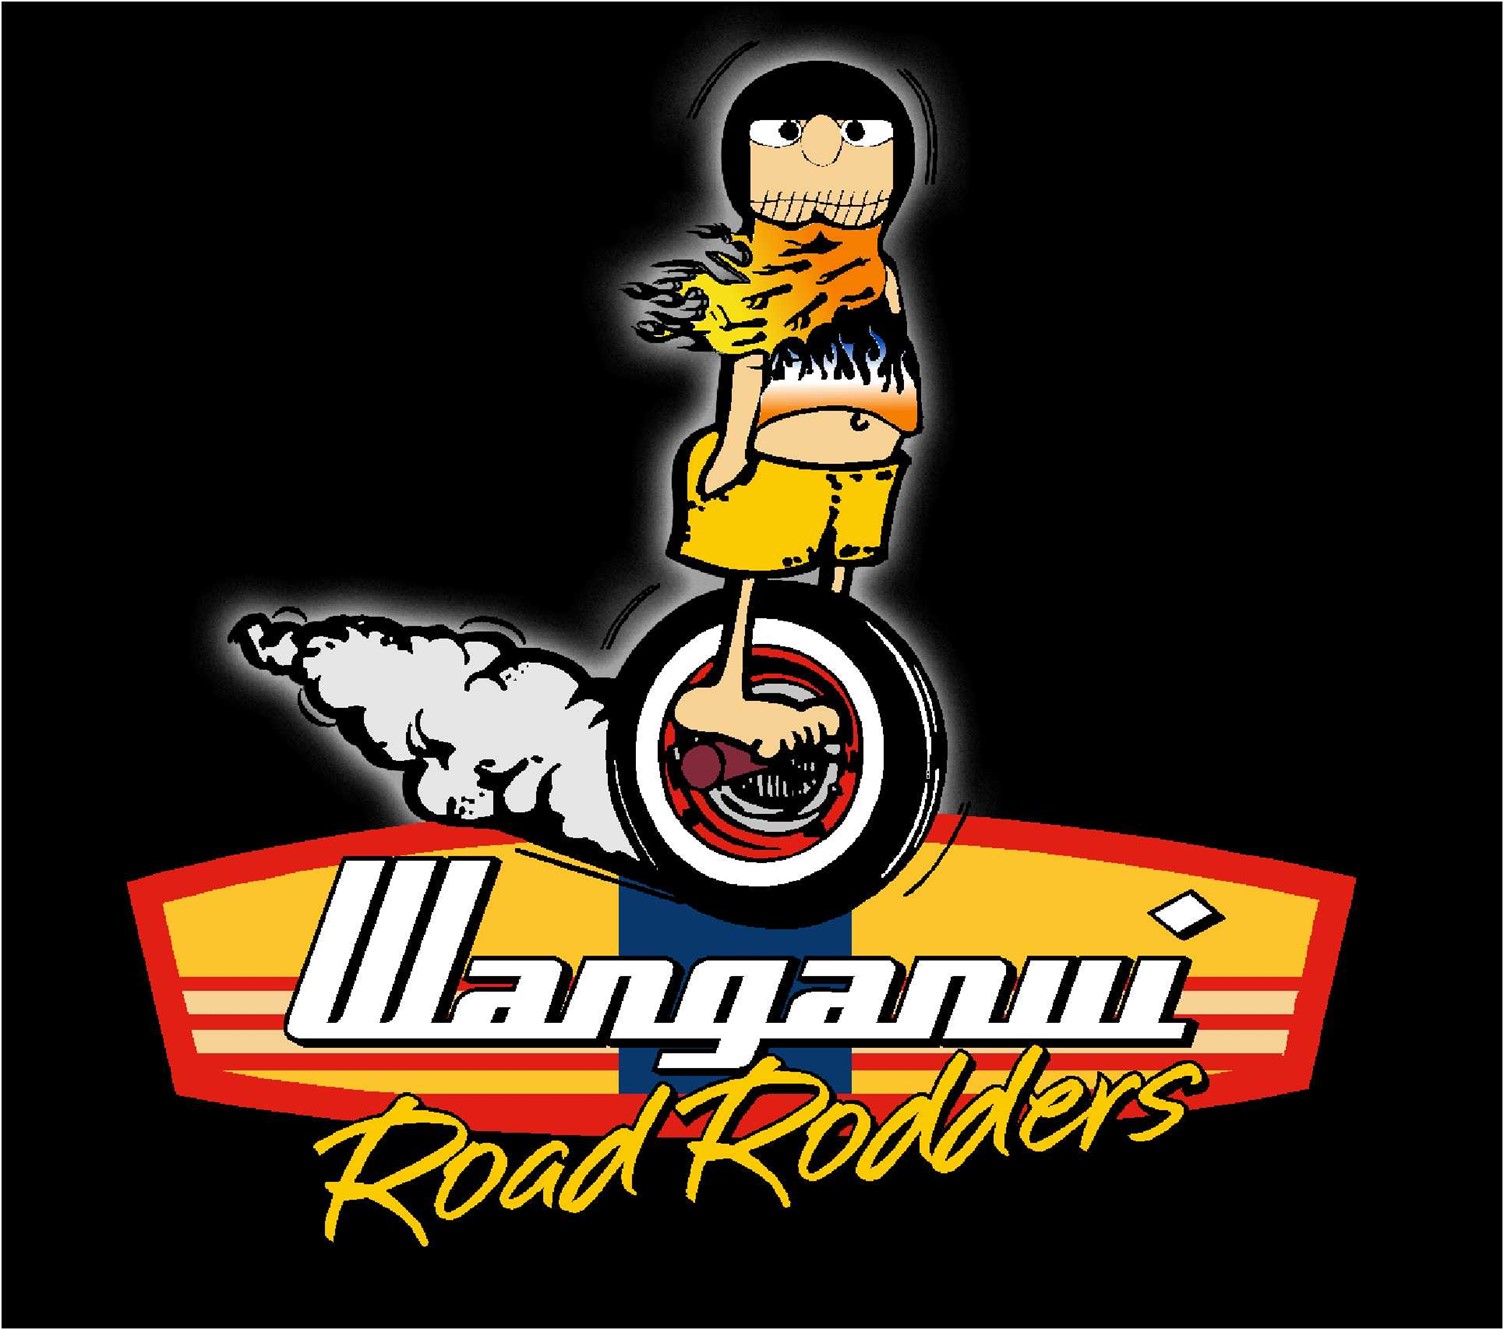 Wanganui Road Rodders - Rod Run